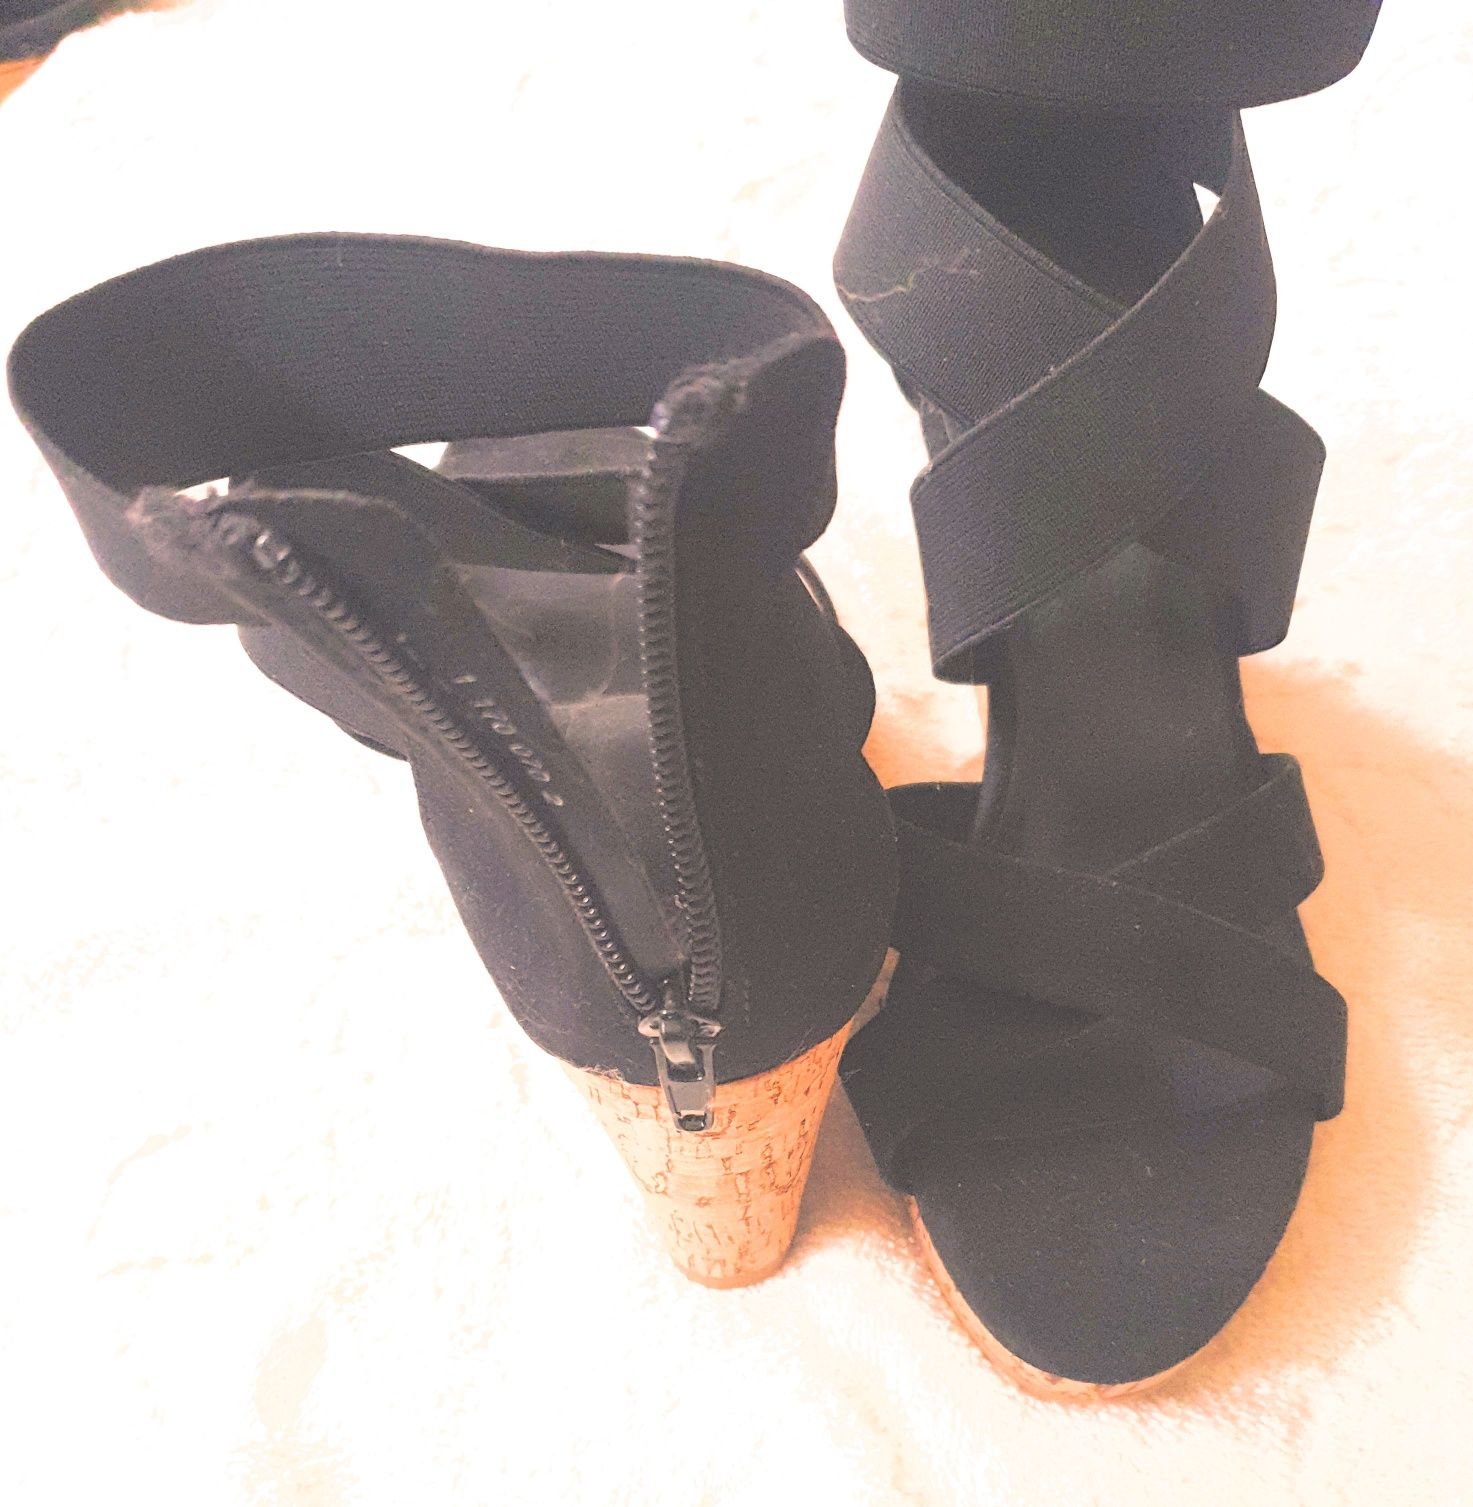 Buty damskie koloru czarnego, zamszowe, nowe, roz 38